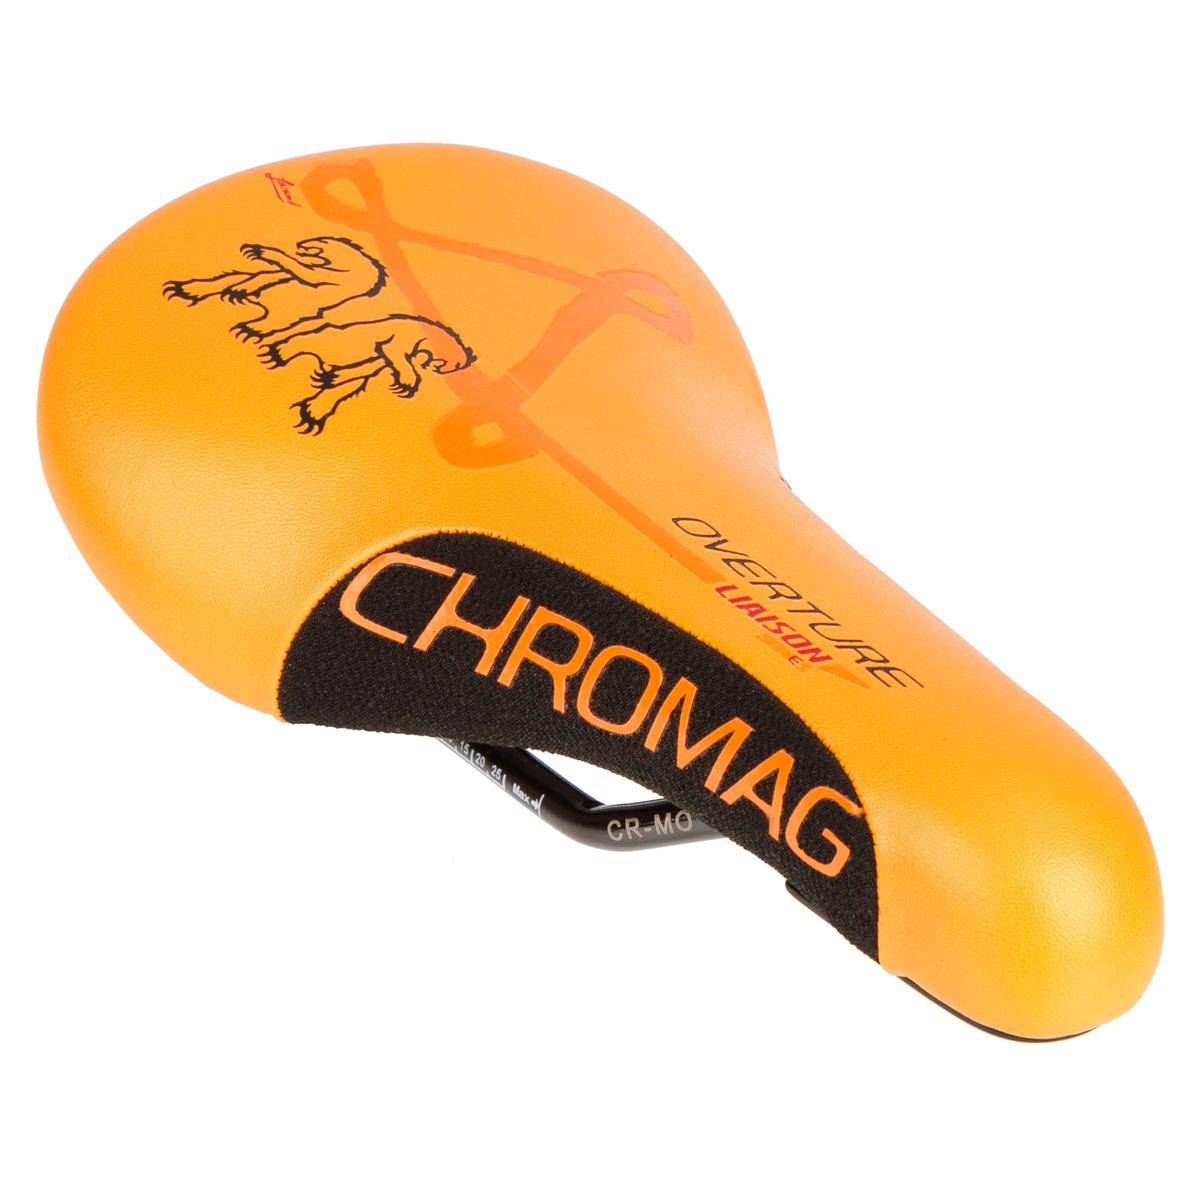 Chromag Saddle Overture 2018 243 x 136 mm, Orange